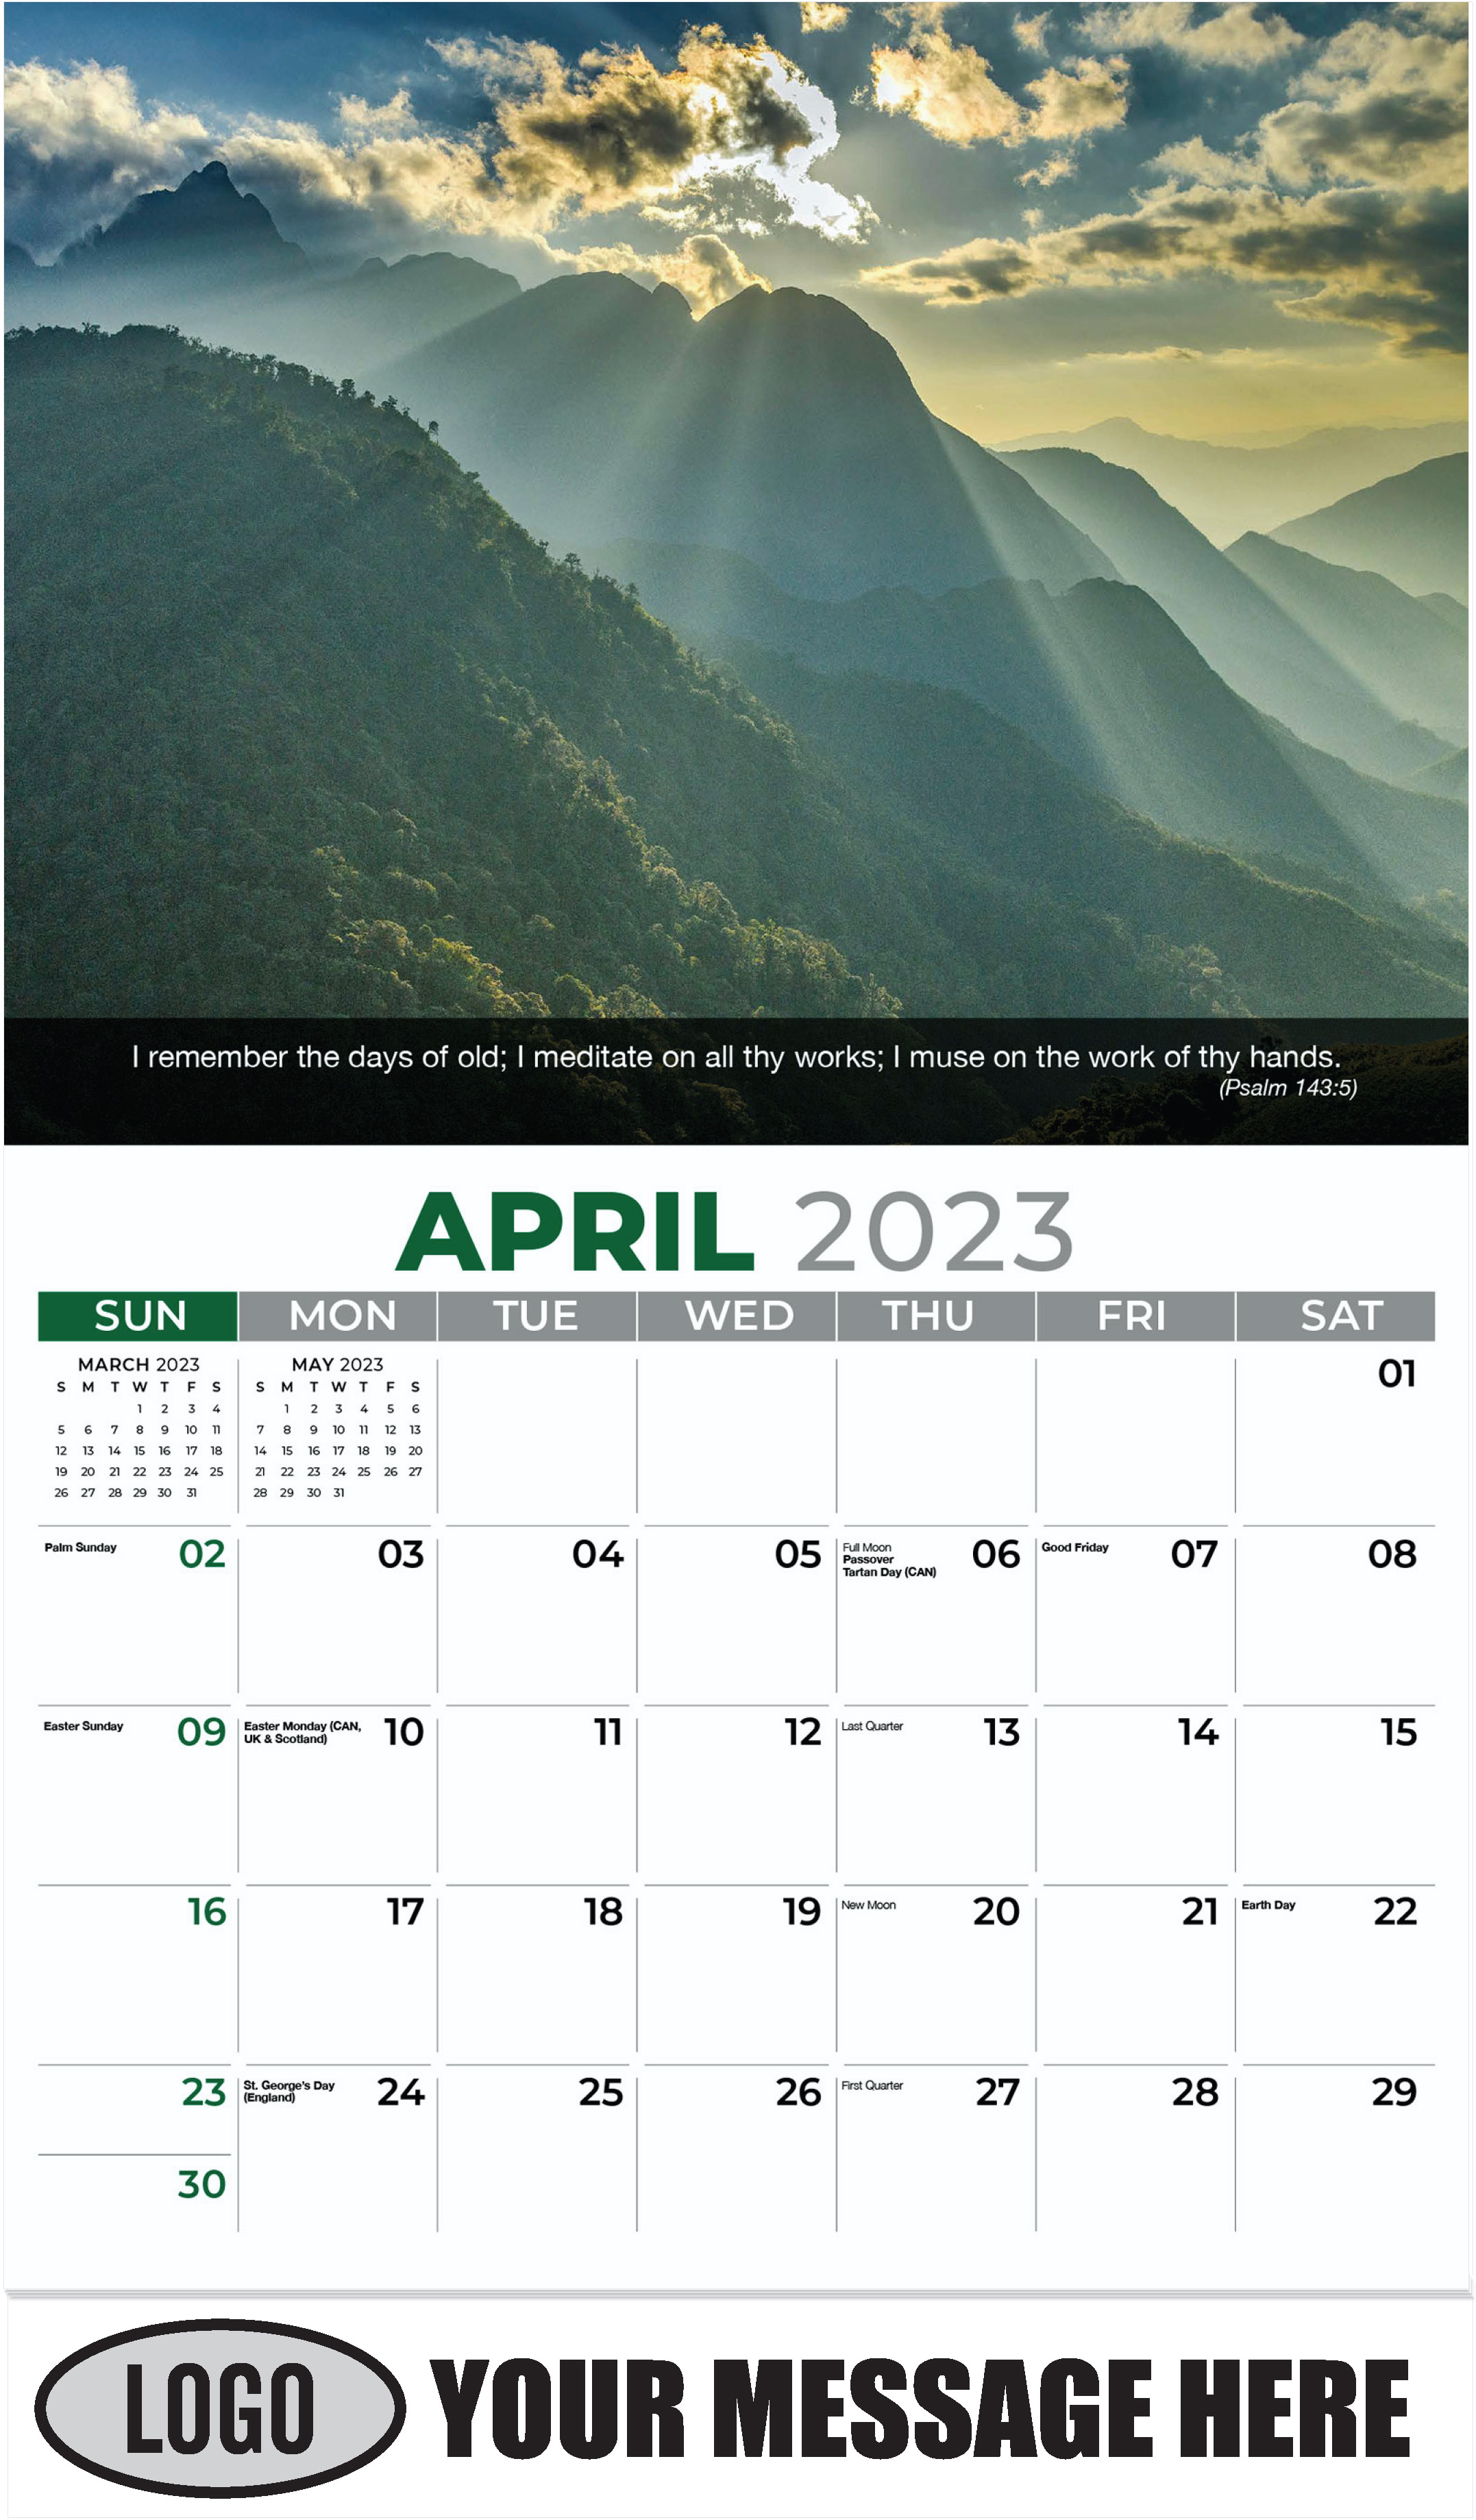 Hoang Lien Son Mountains, Sa Pa - April - Faith Passages 2023 Promotional Calendar